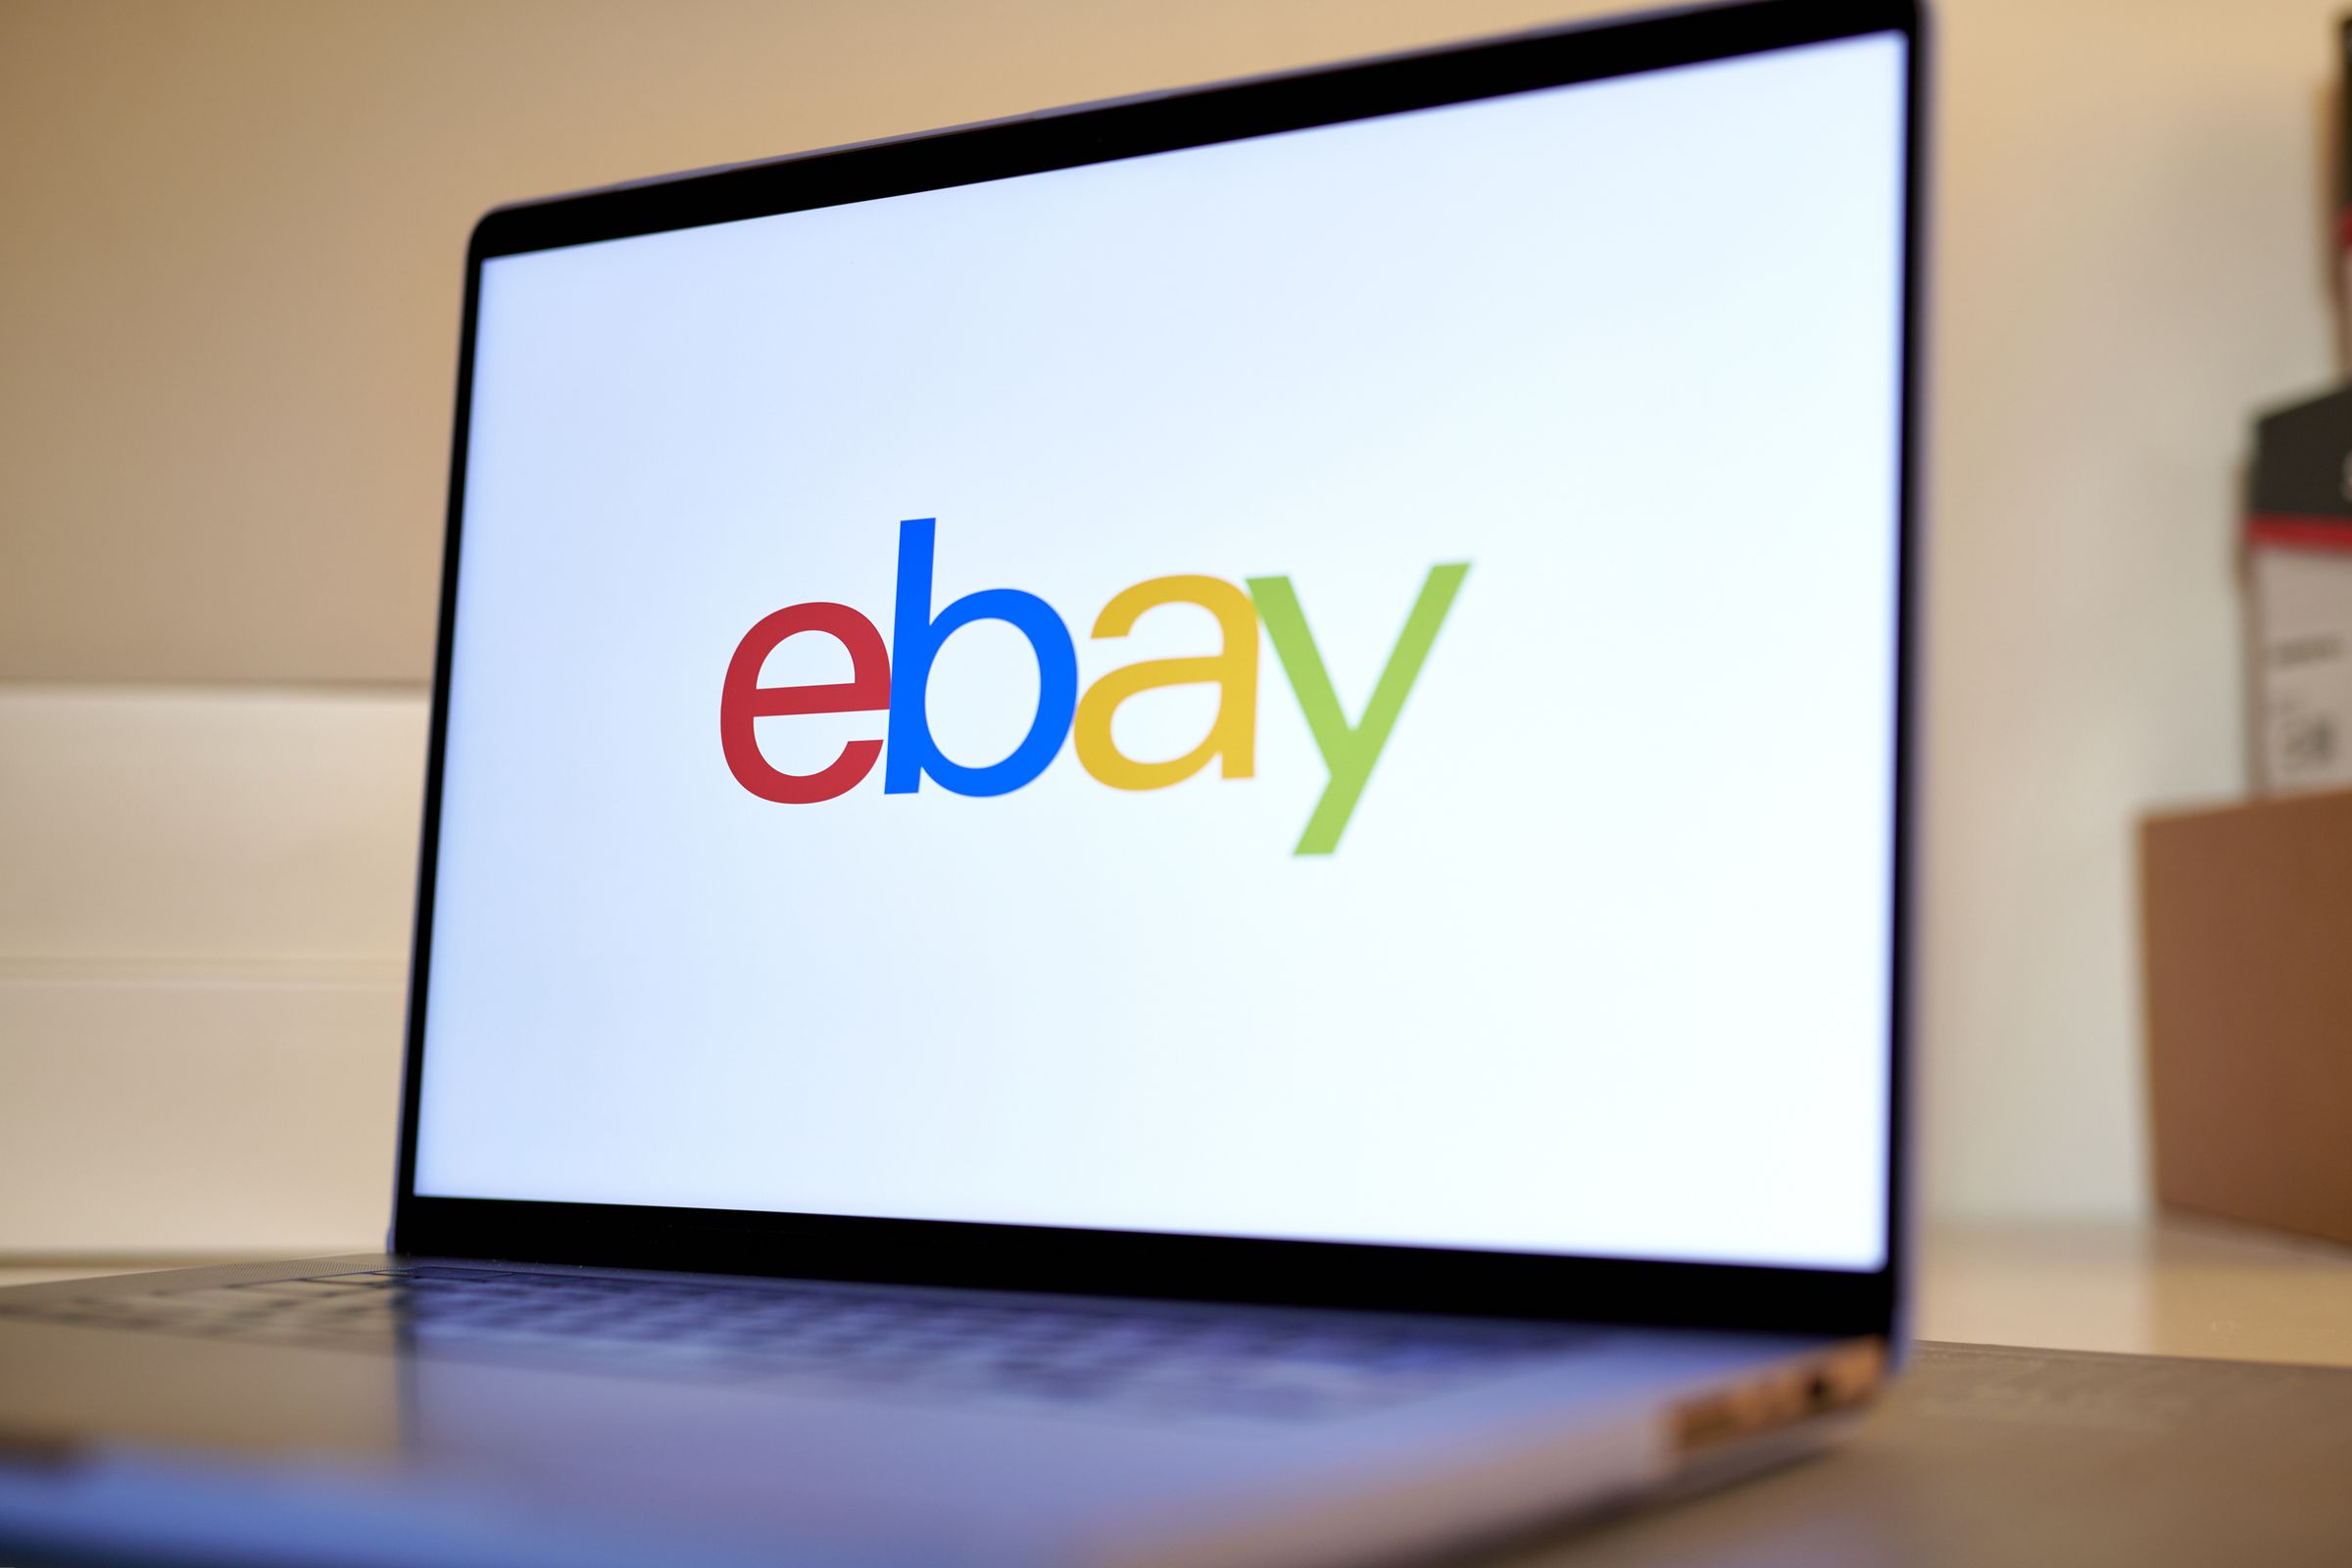 eBay on a laptop